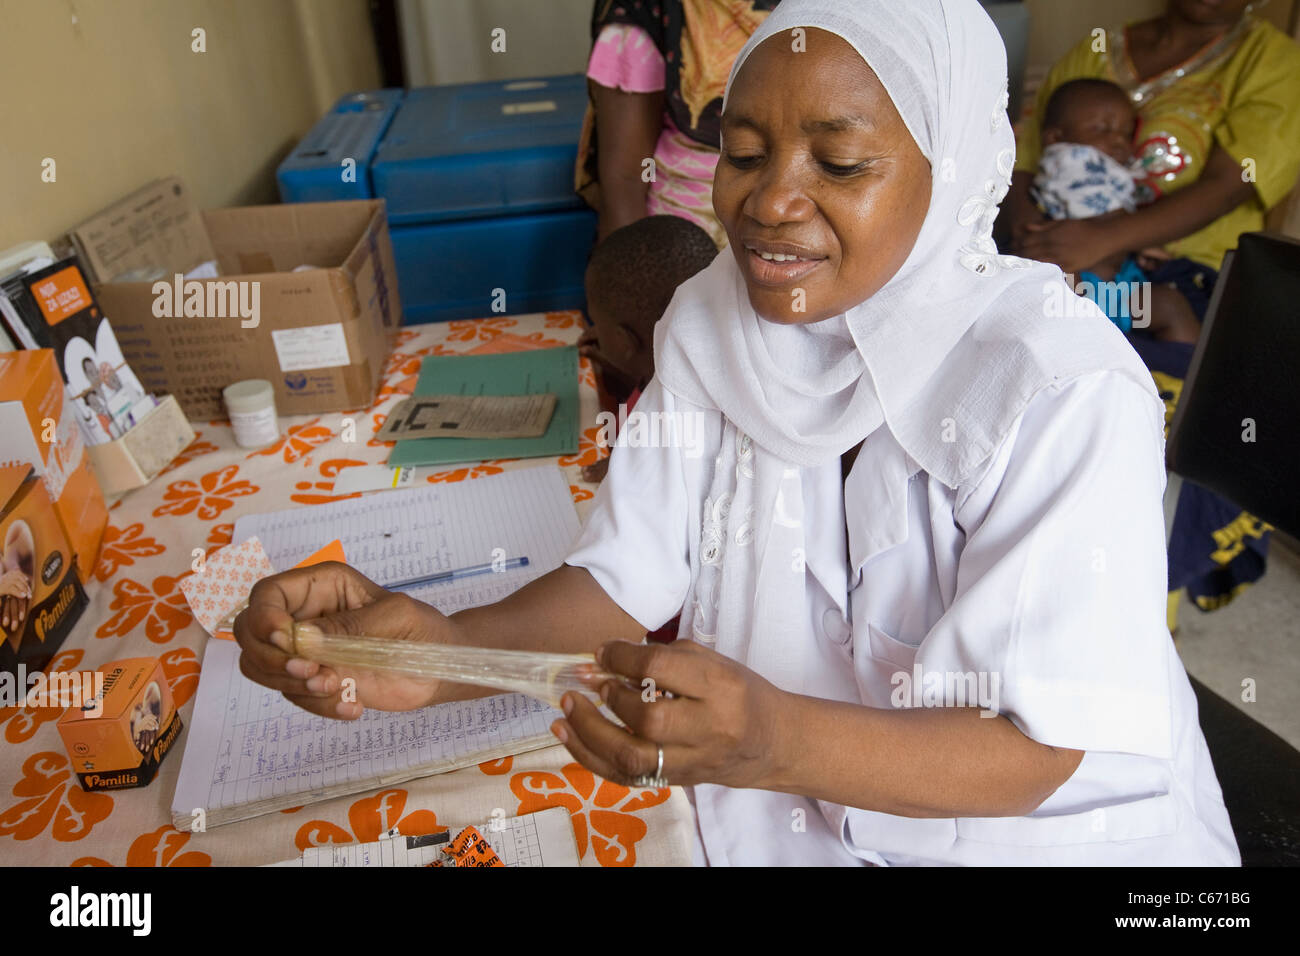 Une femme montre l'utilisation d'un préservatif dans une clinique de planning familial à Dar es Salaam, Tanzanie, Afrique de l'Est. Banque D'Images